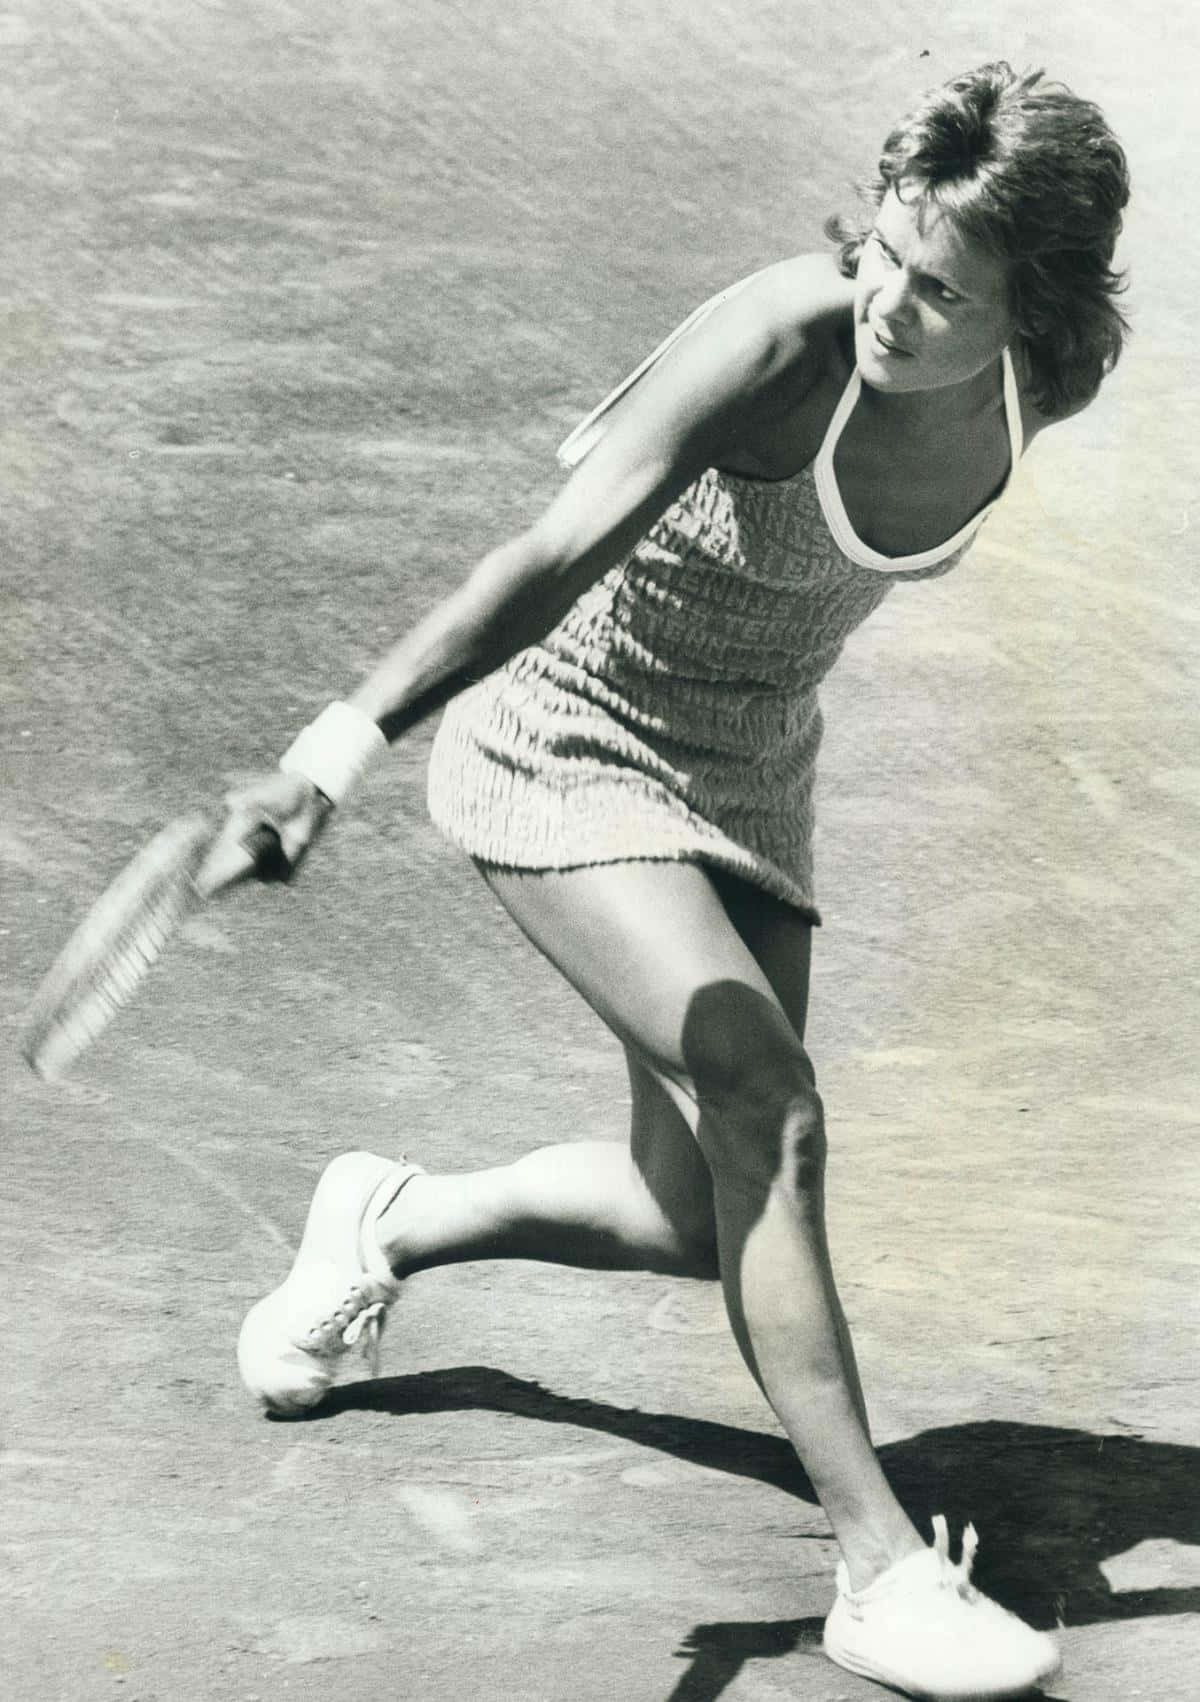 Wallpaper - Gråtone Evonne Goolagong Cawley Tennis Spiller Tapet Wallpaper